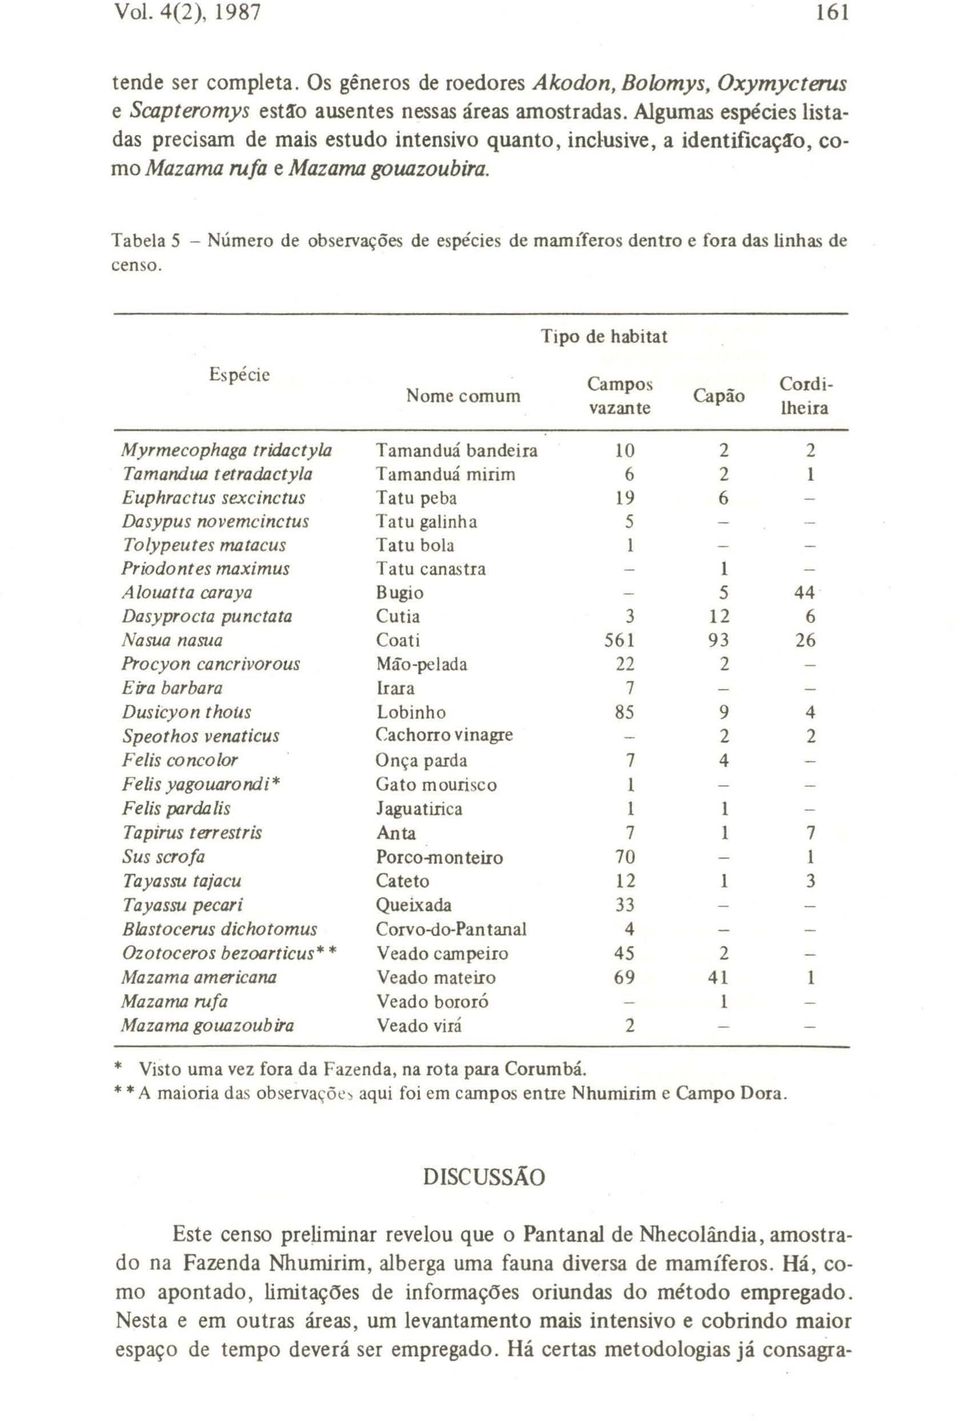 Tabela 5 - Número de observações de espécies de mamíferos dentro e fora das linhas de censo.